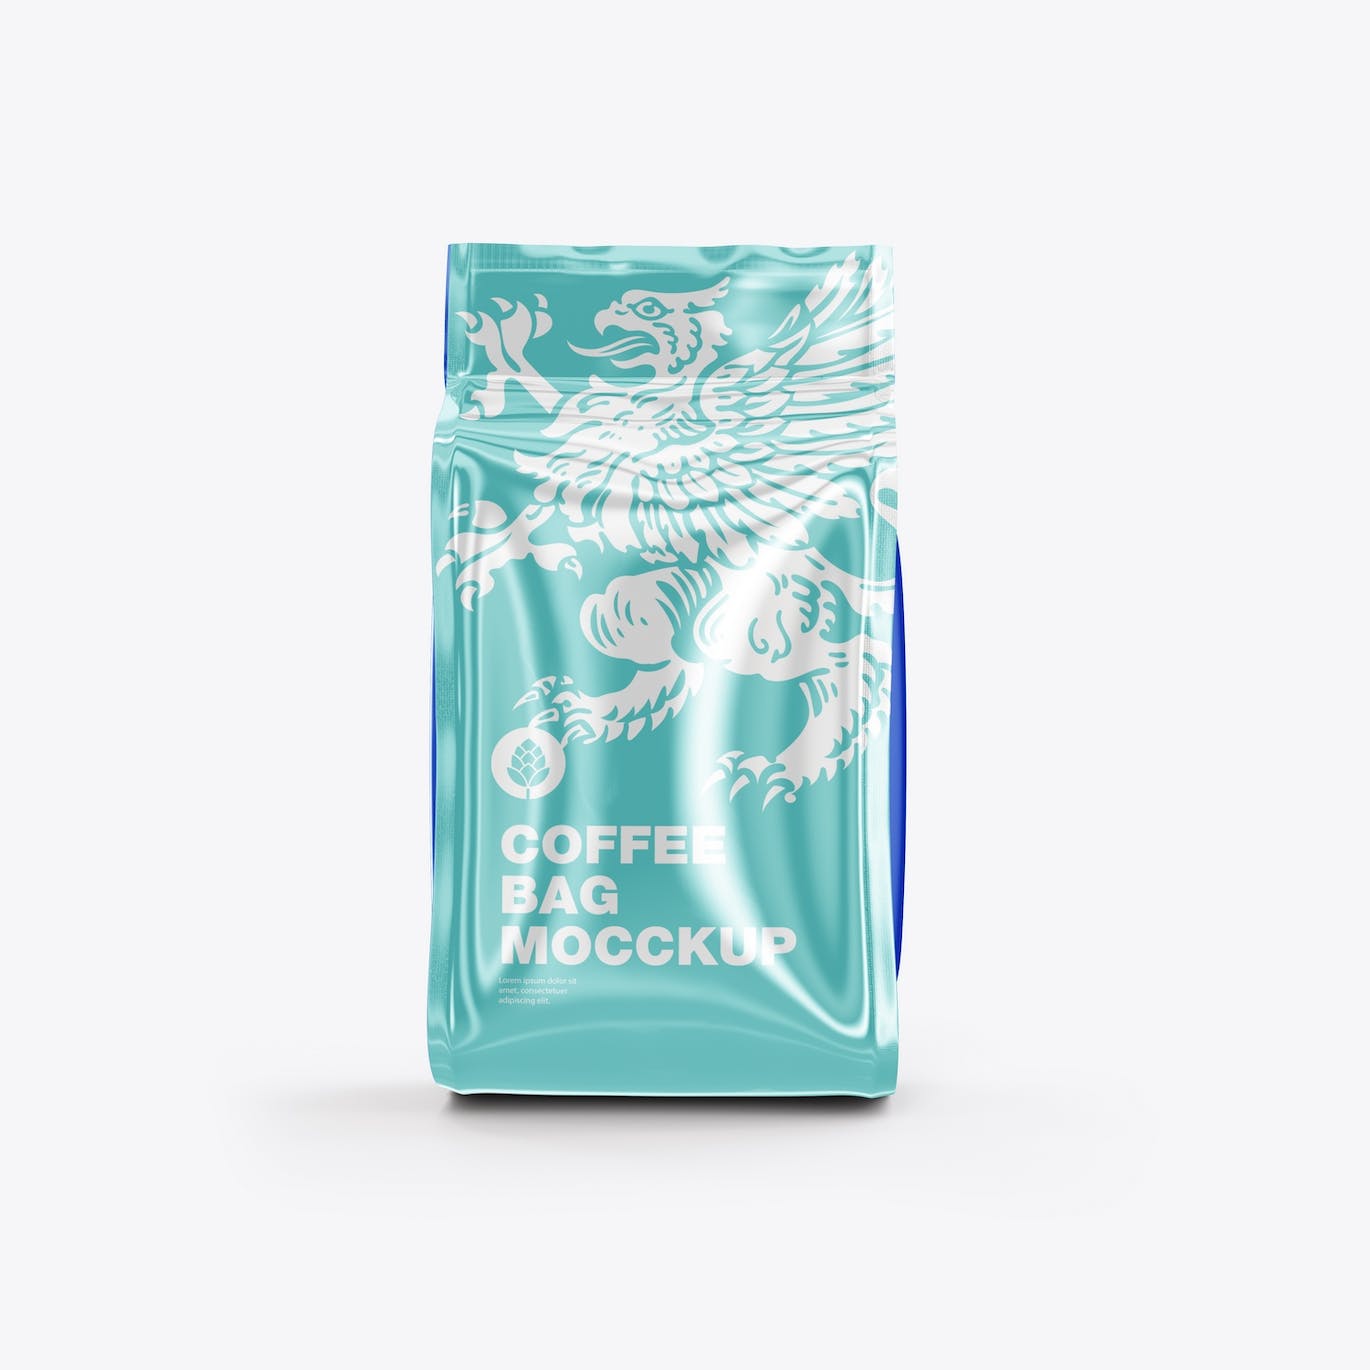 光滑的塑料纸咖啡袋包装设计样机图 Set Glossy Plastic Paper Coffee Bag Mockup 样机素材 第10张